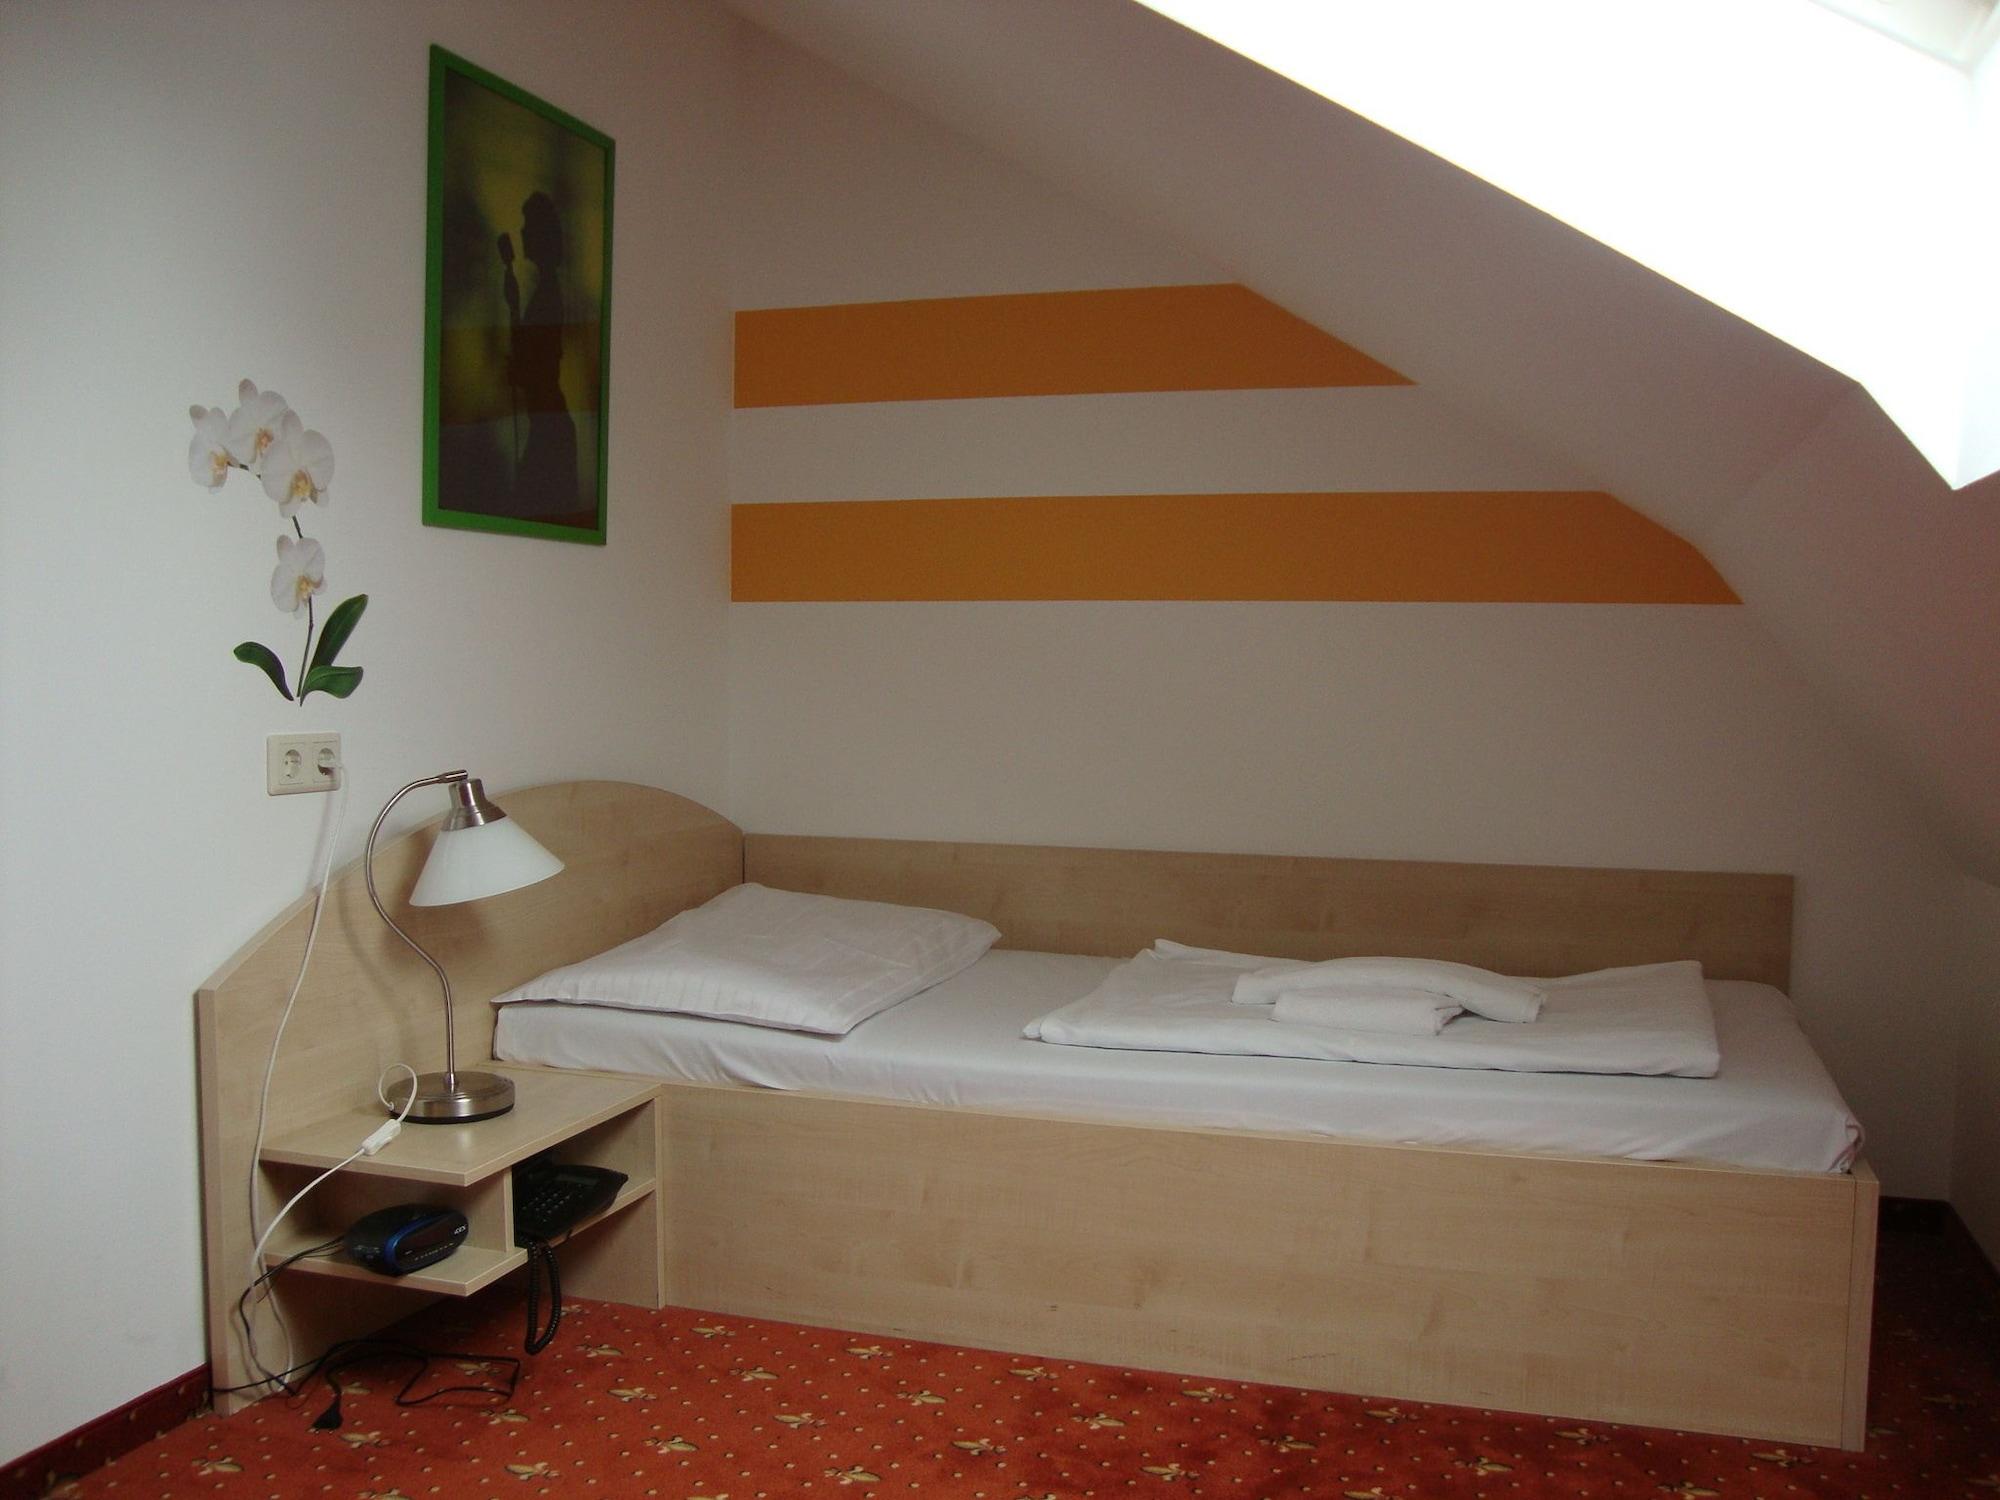 Lenas Donau Hotel Wiedeń Zewnętrze zdjęcie